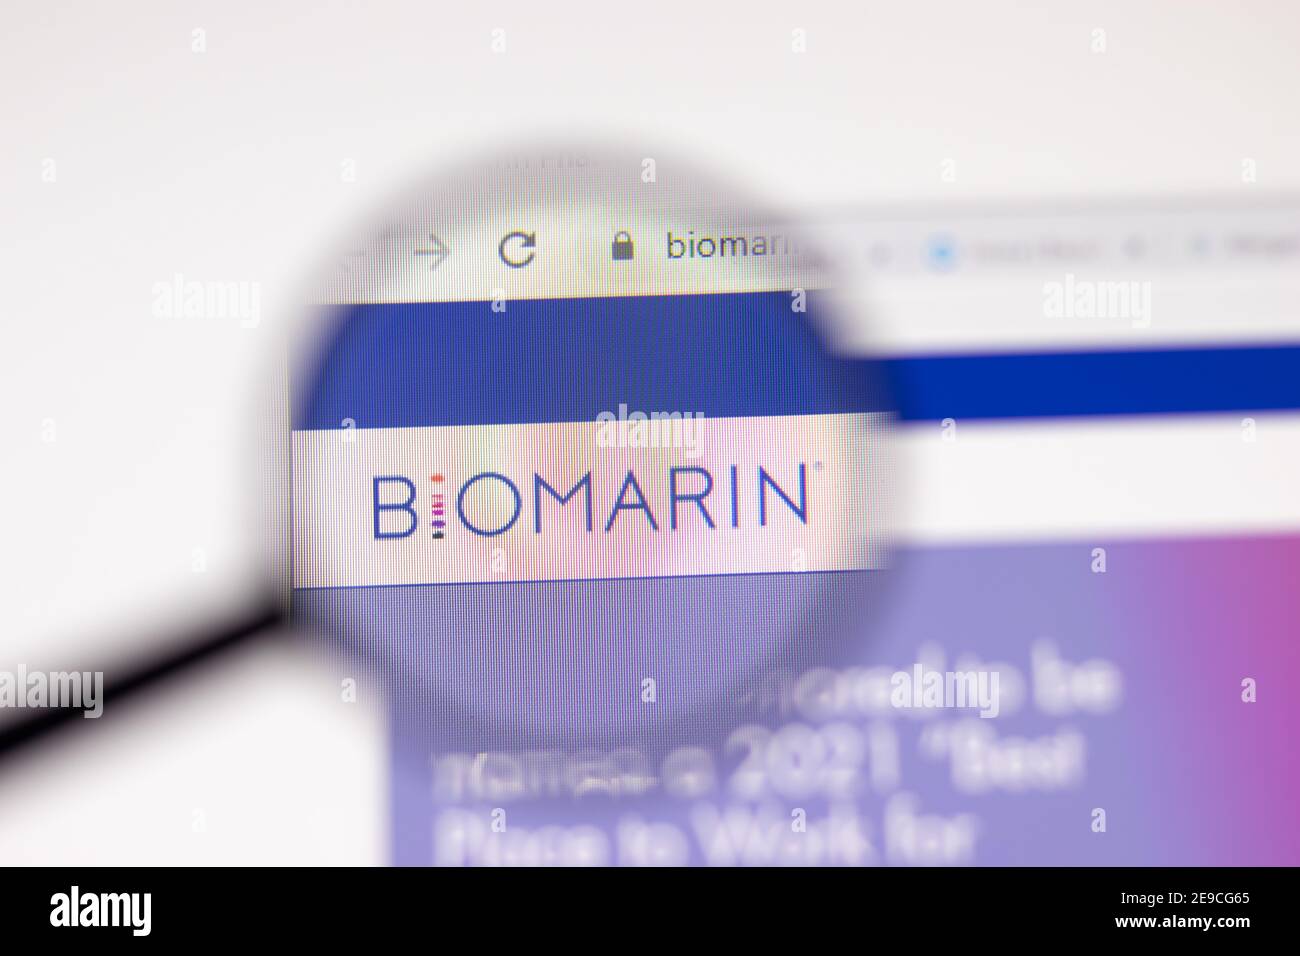 Los Angeles, USA - 1 Febbraio 2021: Pagina web di BioMarin Pharmaceutical. Biomarin.com logo sullo schermo, editoriale illustrativo Foto Stock